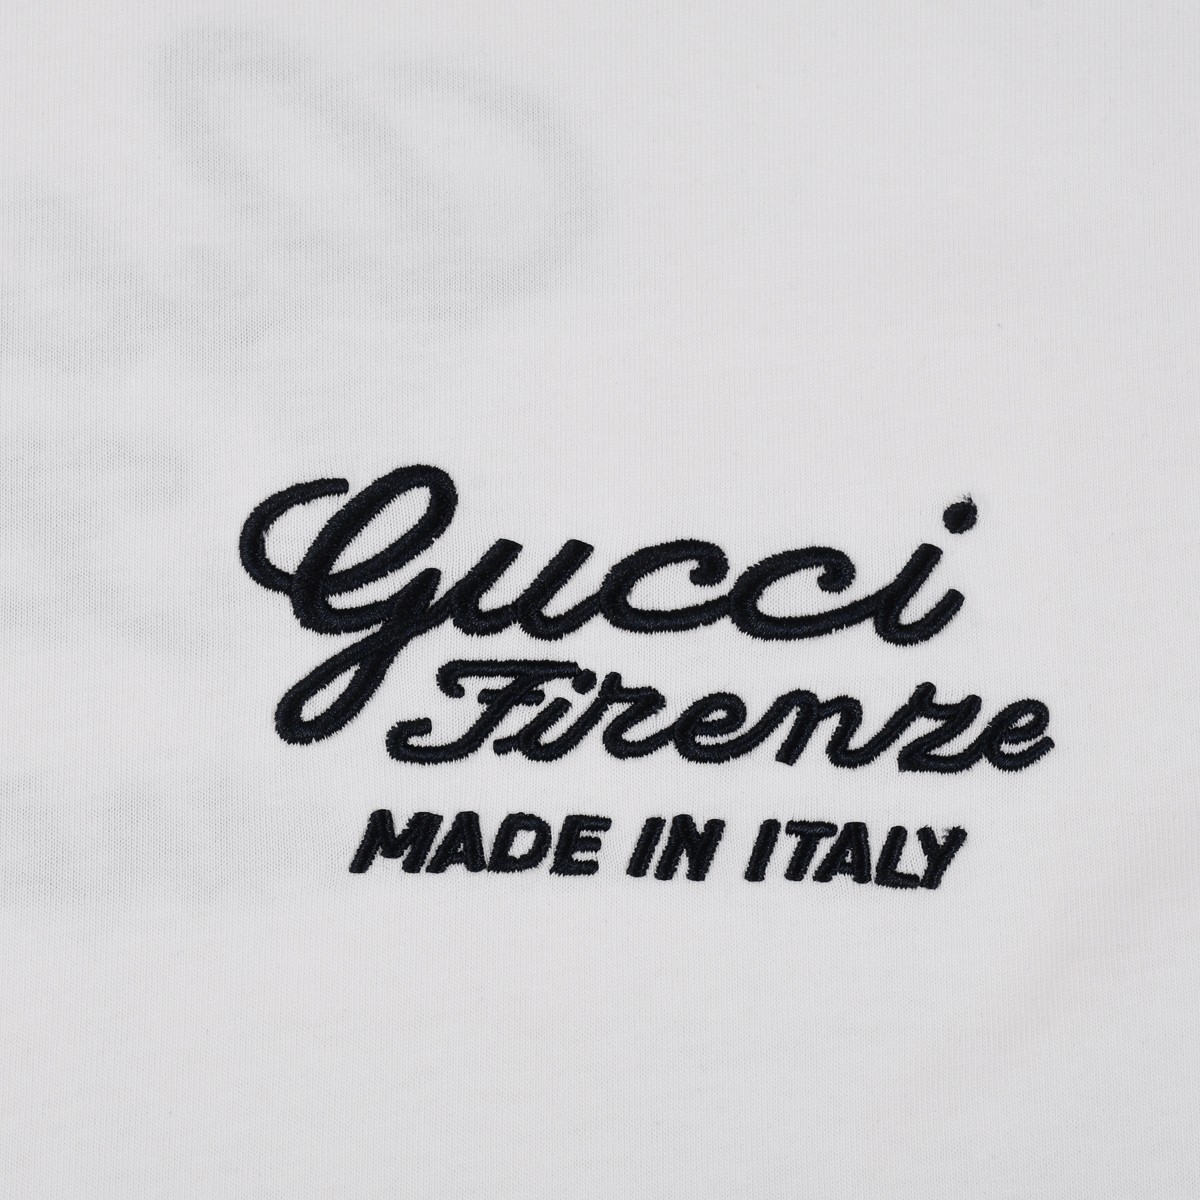 Gucci.24ss最新物语高品质高克重纯棉欧潮版短袖T恤前后刺绣工艺要求车线做工符合精品要求超级好搭配